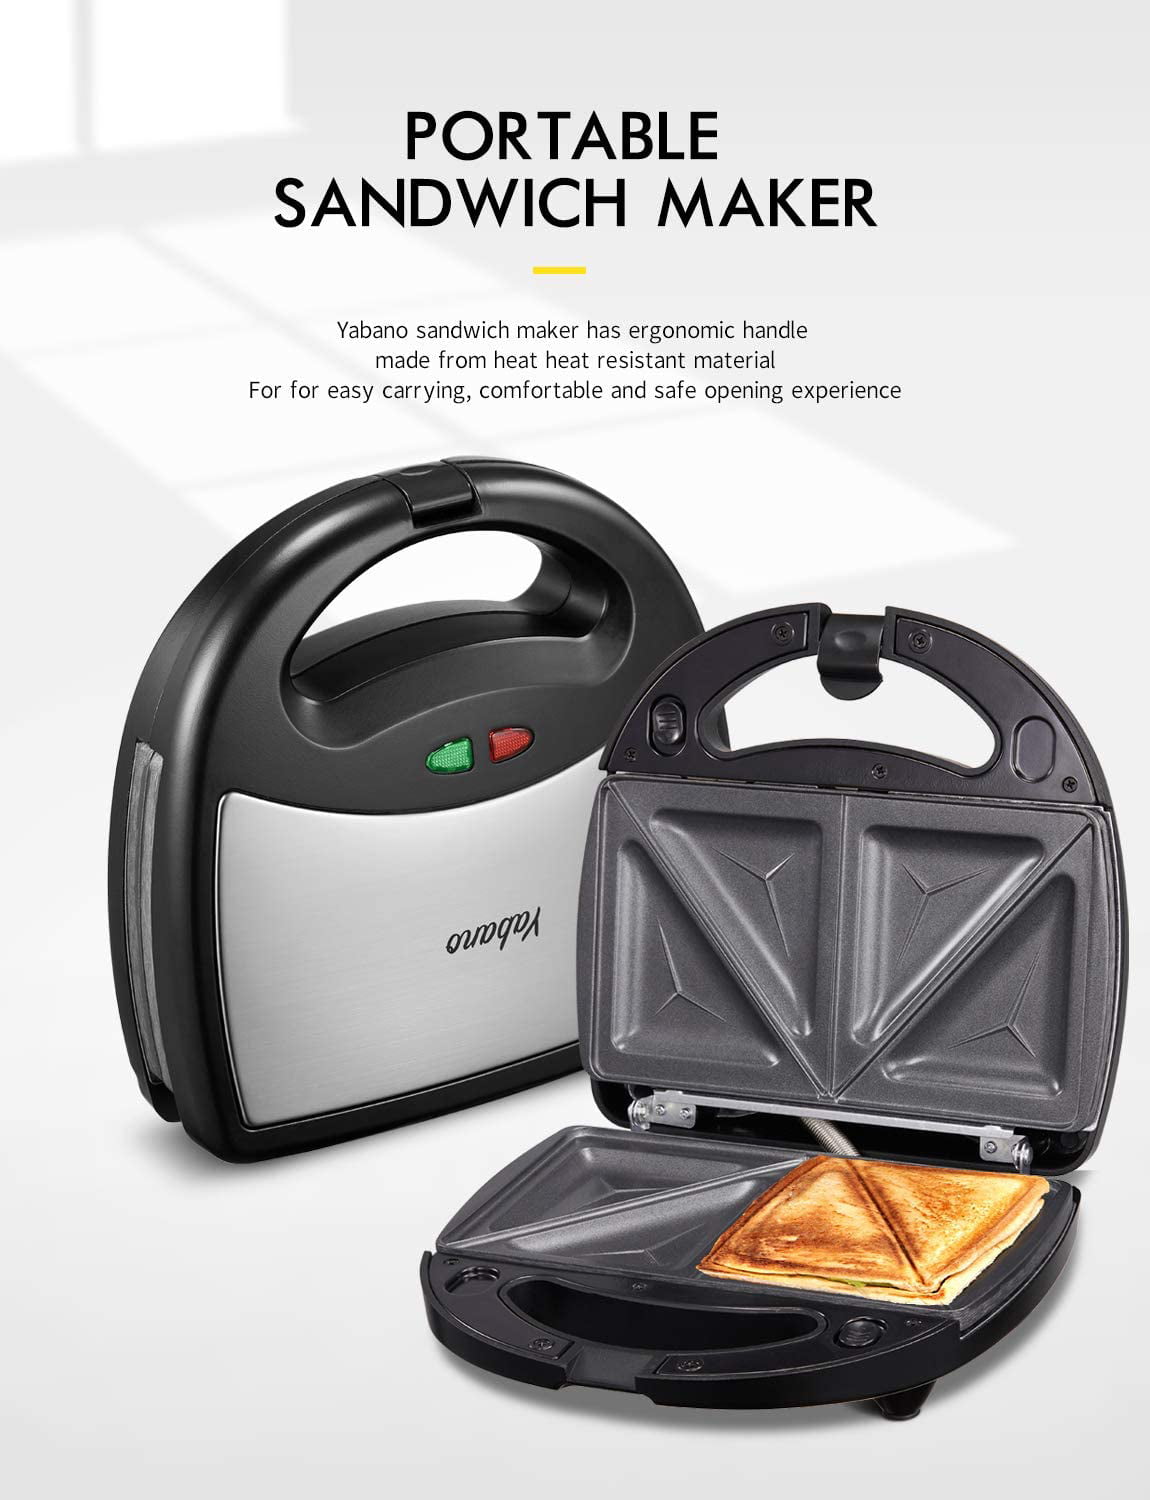 Westpoint Sandwich Toaster 3 in 1 WF-6193